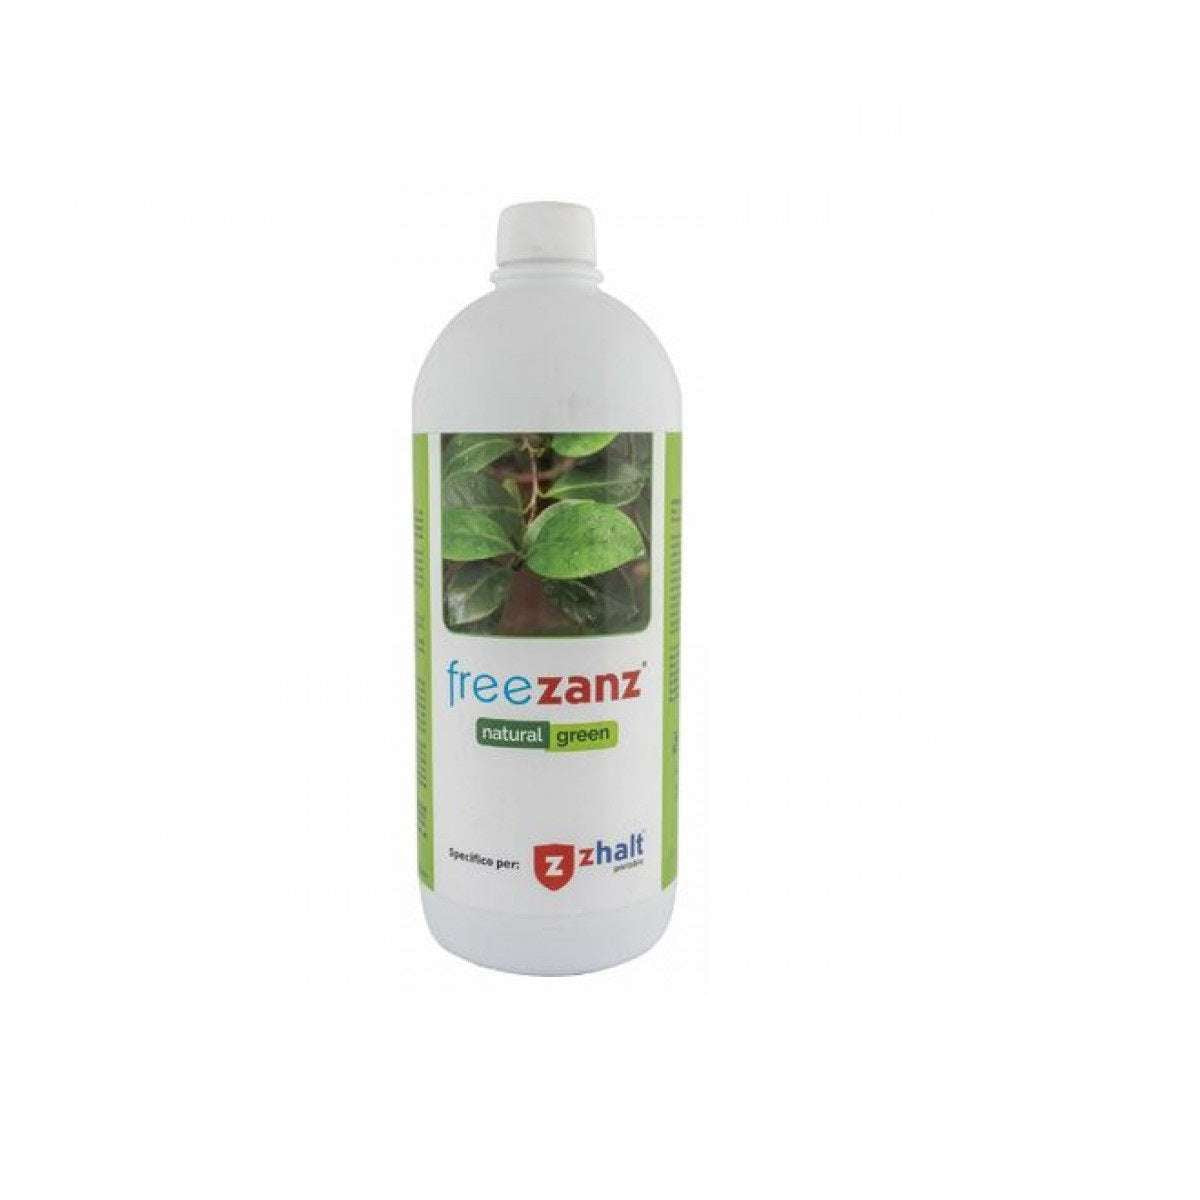 Antizanzare repellente capacità 1LT per Zhalt Portable - Freezanz Natural Green